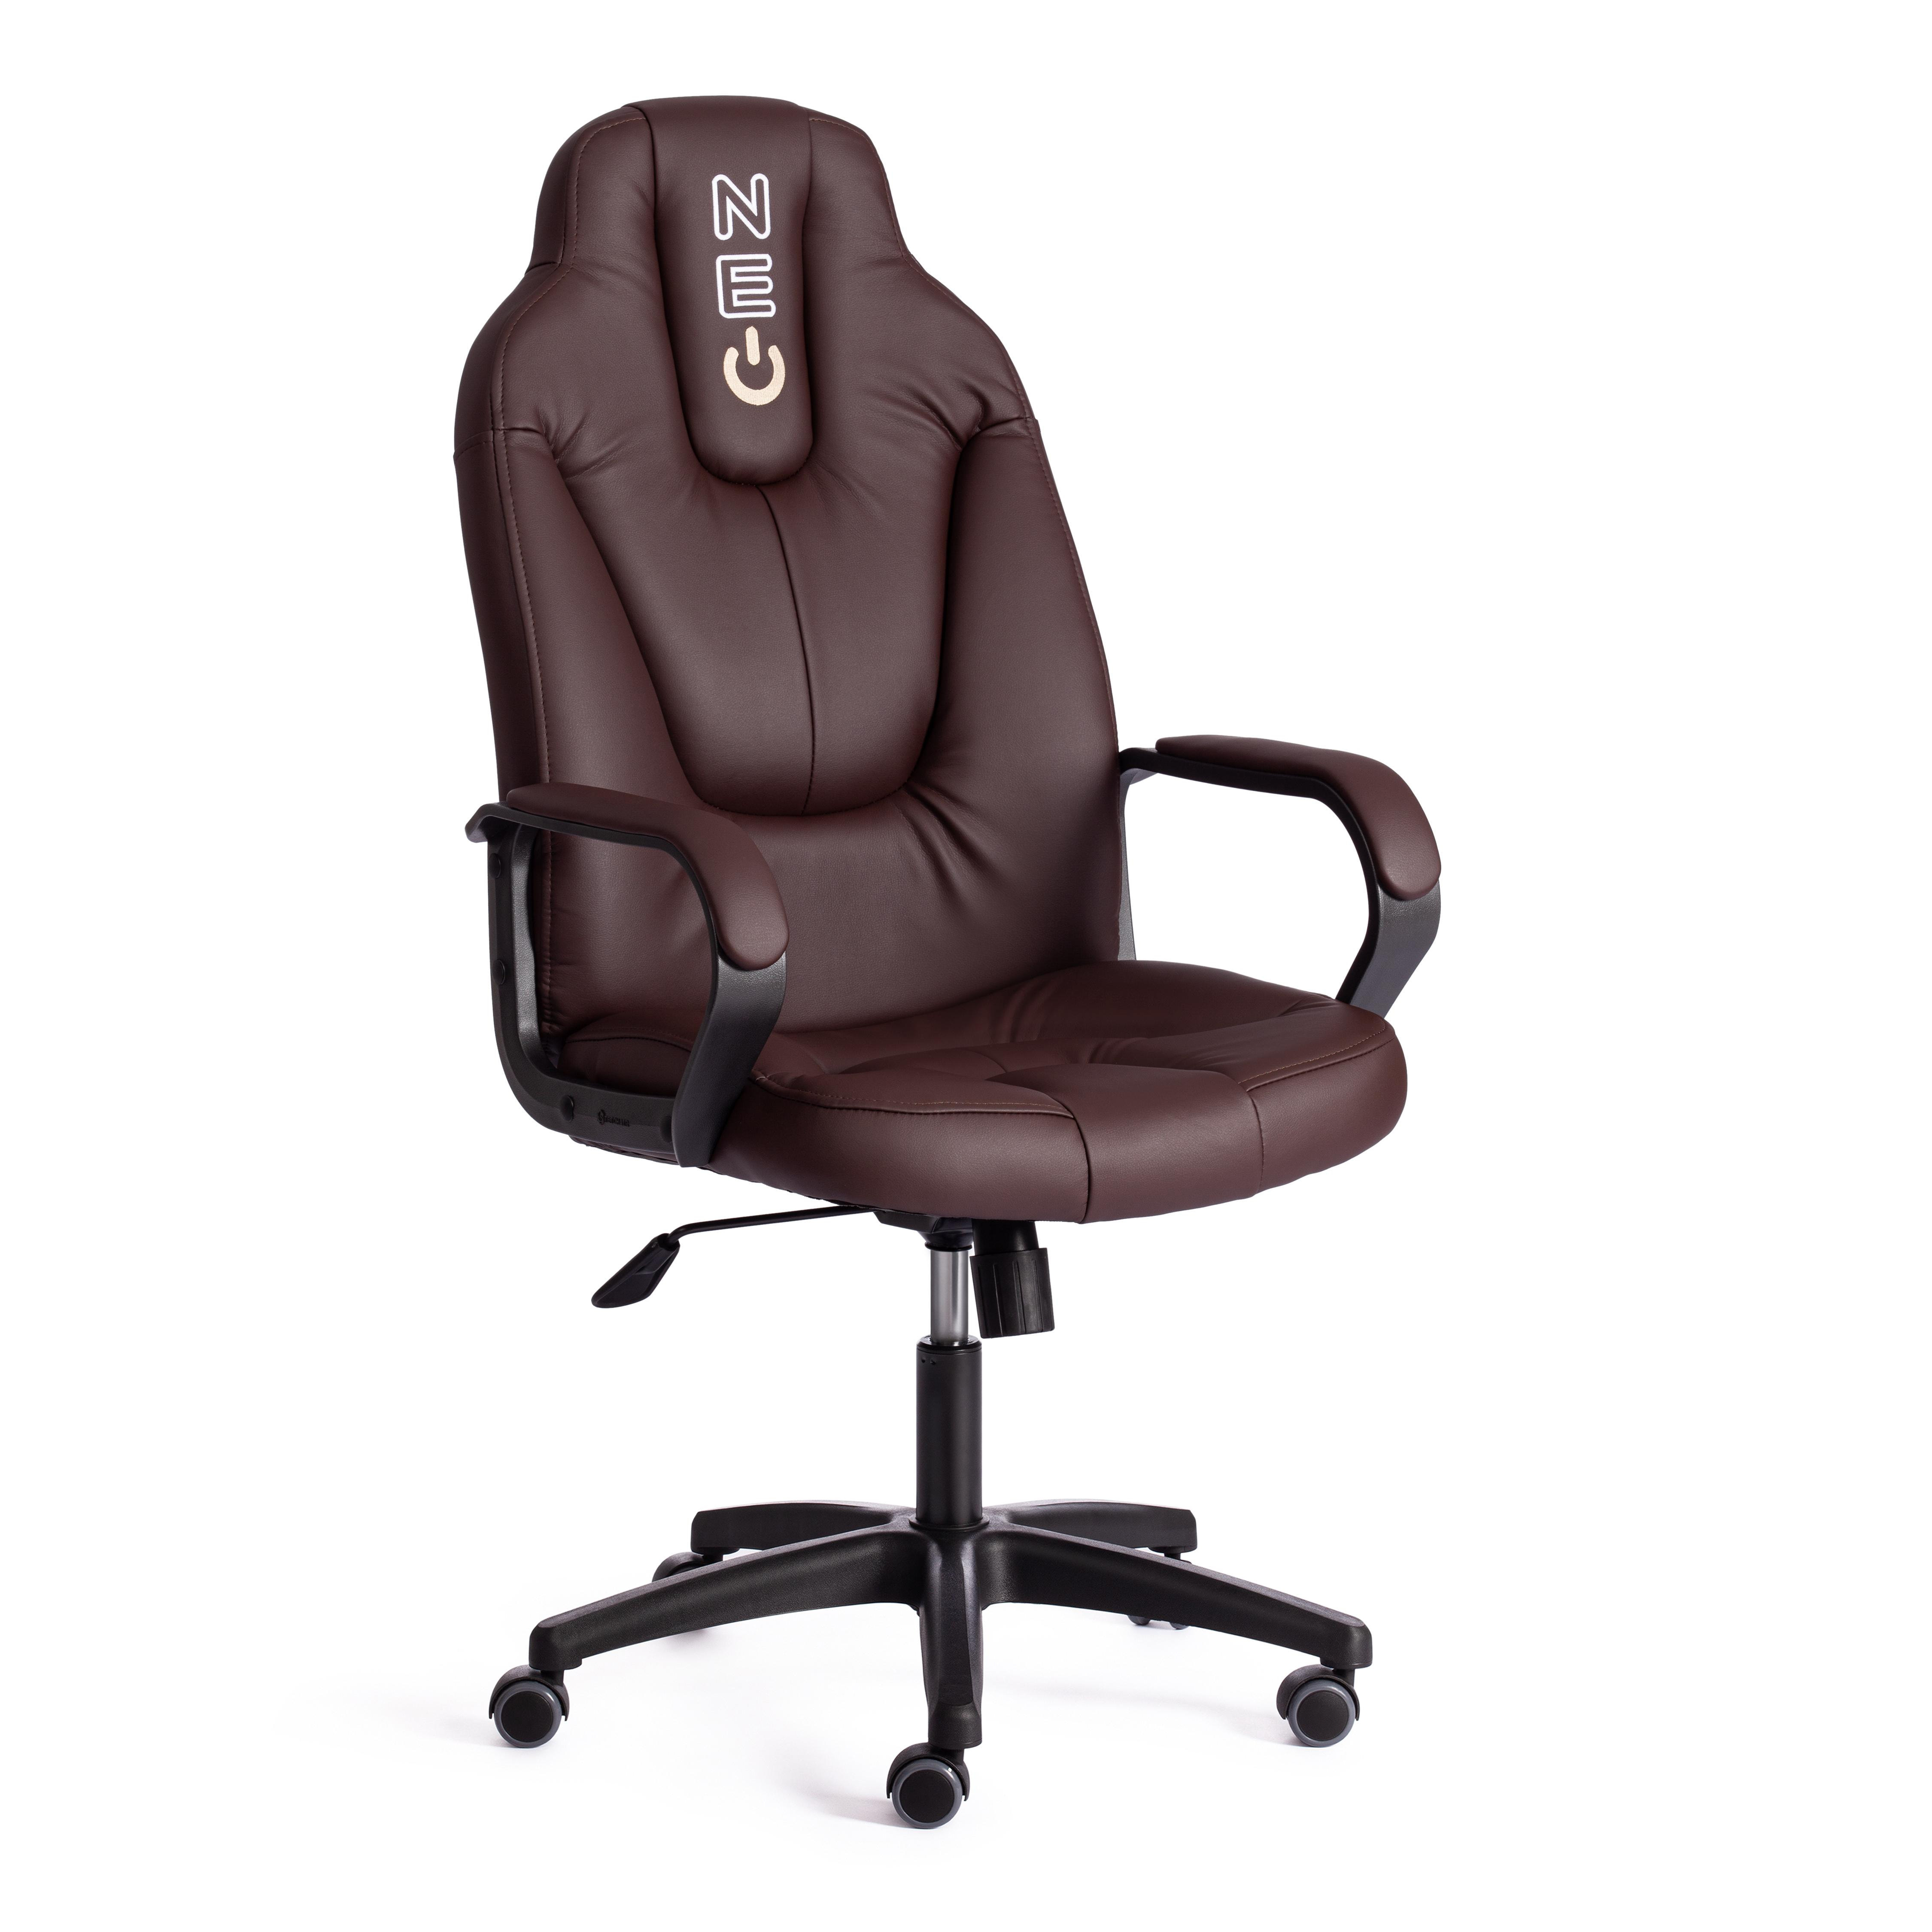 90938889 Офисное кресло Neo 2 экокожа цвет коричневый STLM-0424998 TETCHAIR